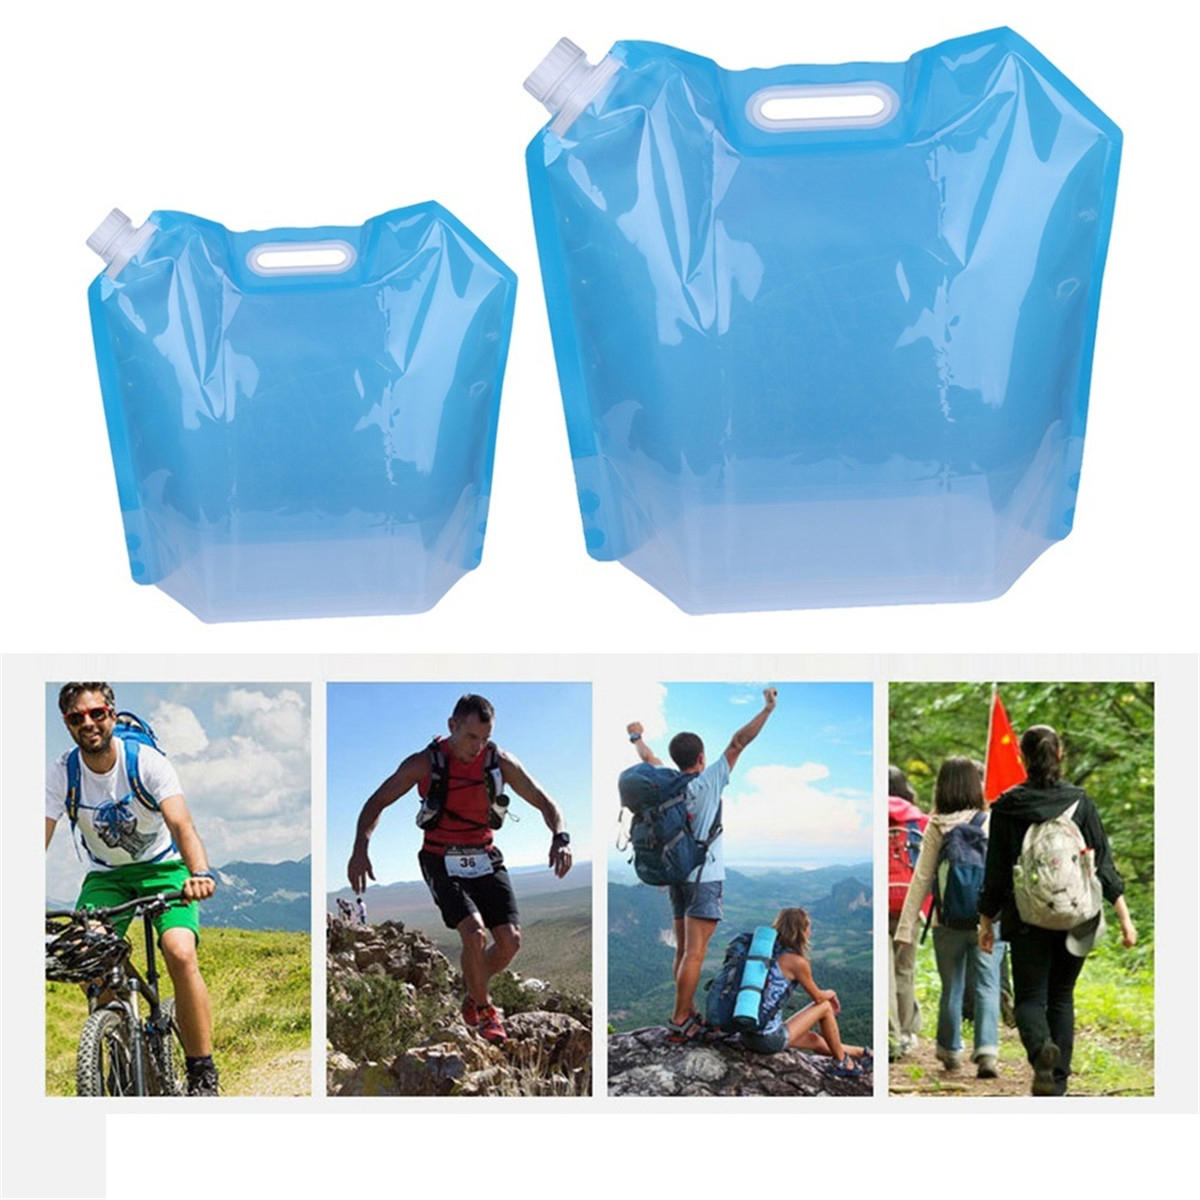 Bolsa de armazenamento de água dobrável em PVC ecológico de 5/10 litros para atividades ao ar livre e viagens